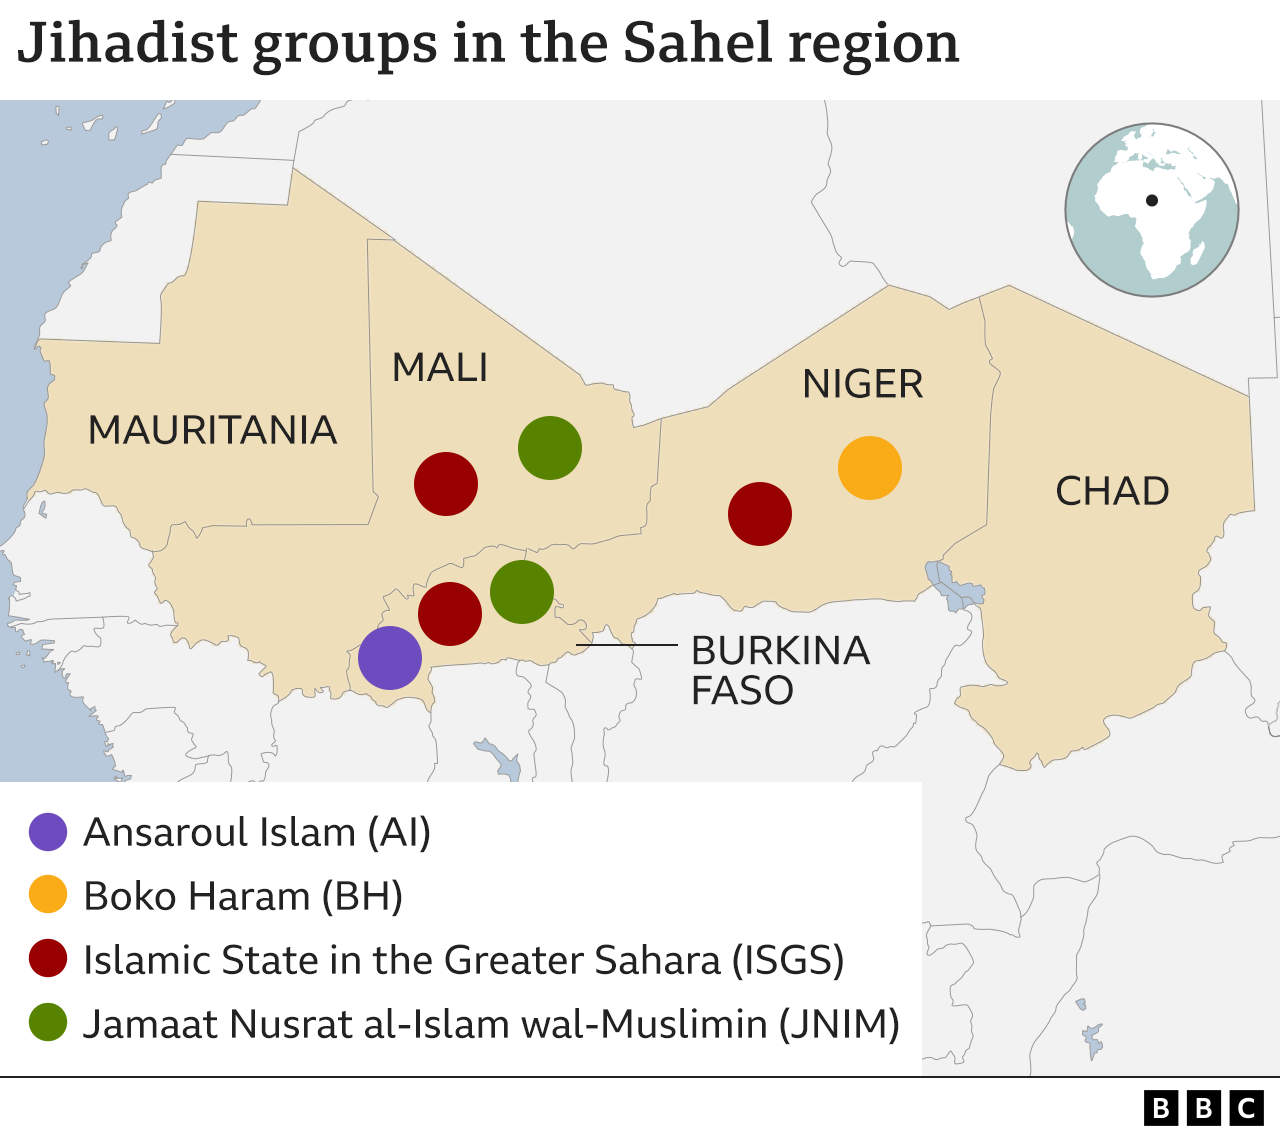 Карта региона Сахель в Северной Африке с указанием того, какие джихадистские группировки действуют в каждой стране